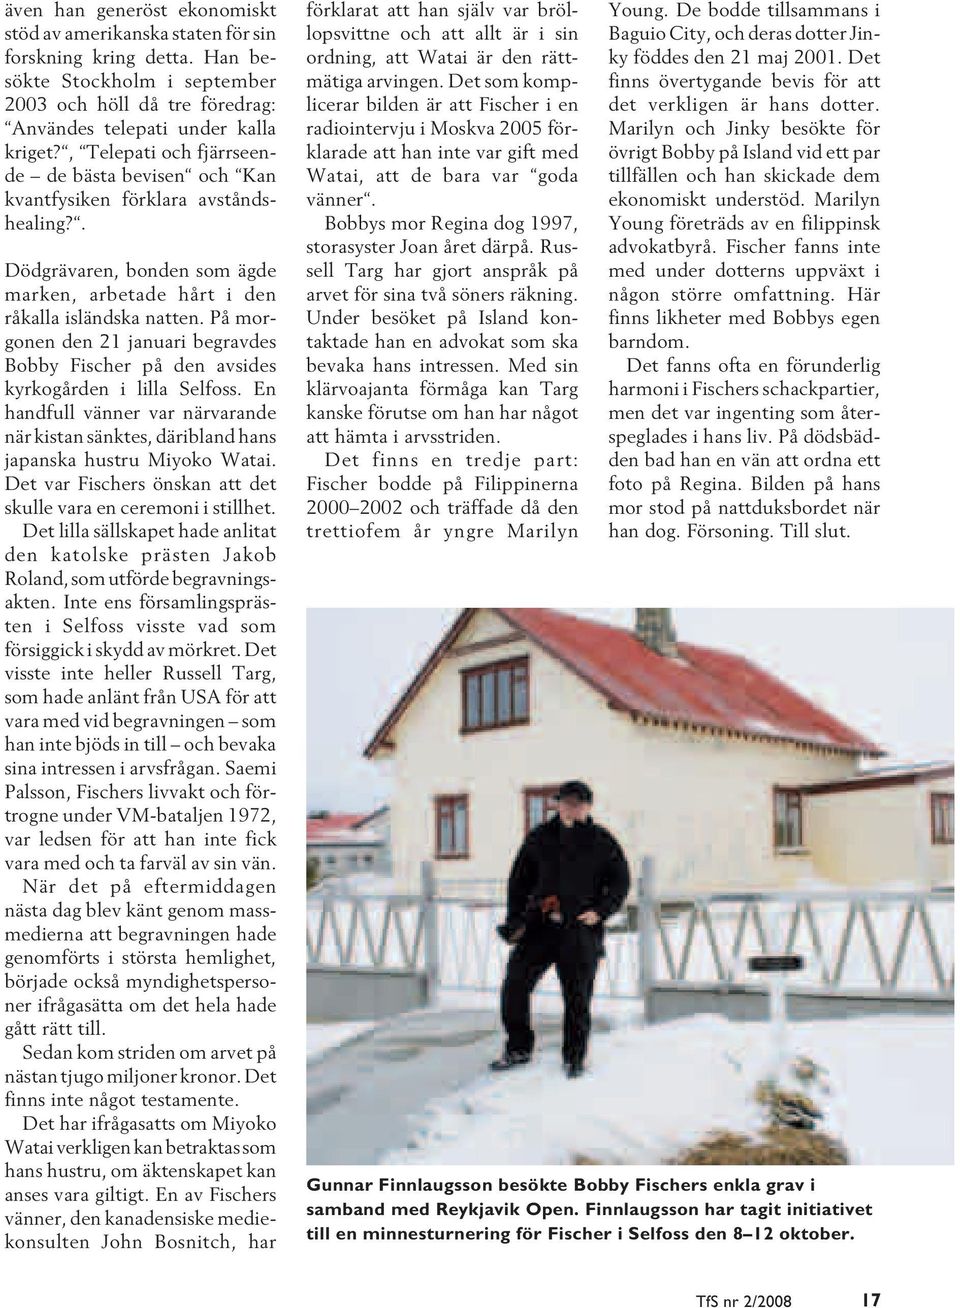 På morgonen den 21 januari begravdes Bobby Fischer på den avsides kyrkogården i lilla Selfoss. En handfull vänner var närvarande när kistan sänktes, däribland hans japanska hustru Miyoko Watai.